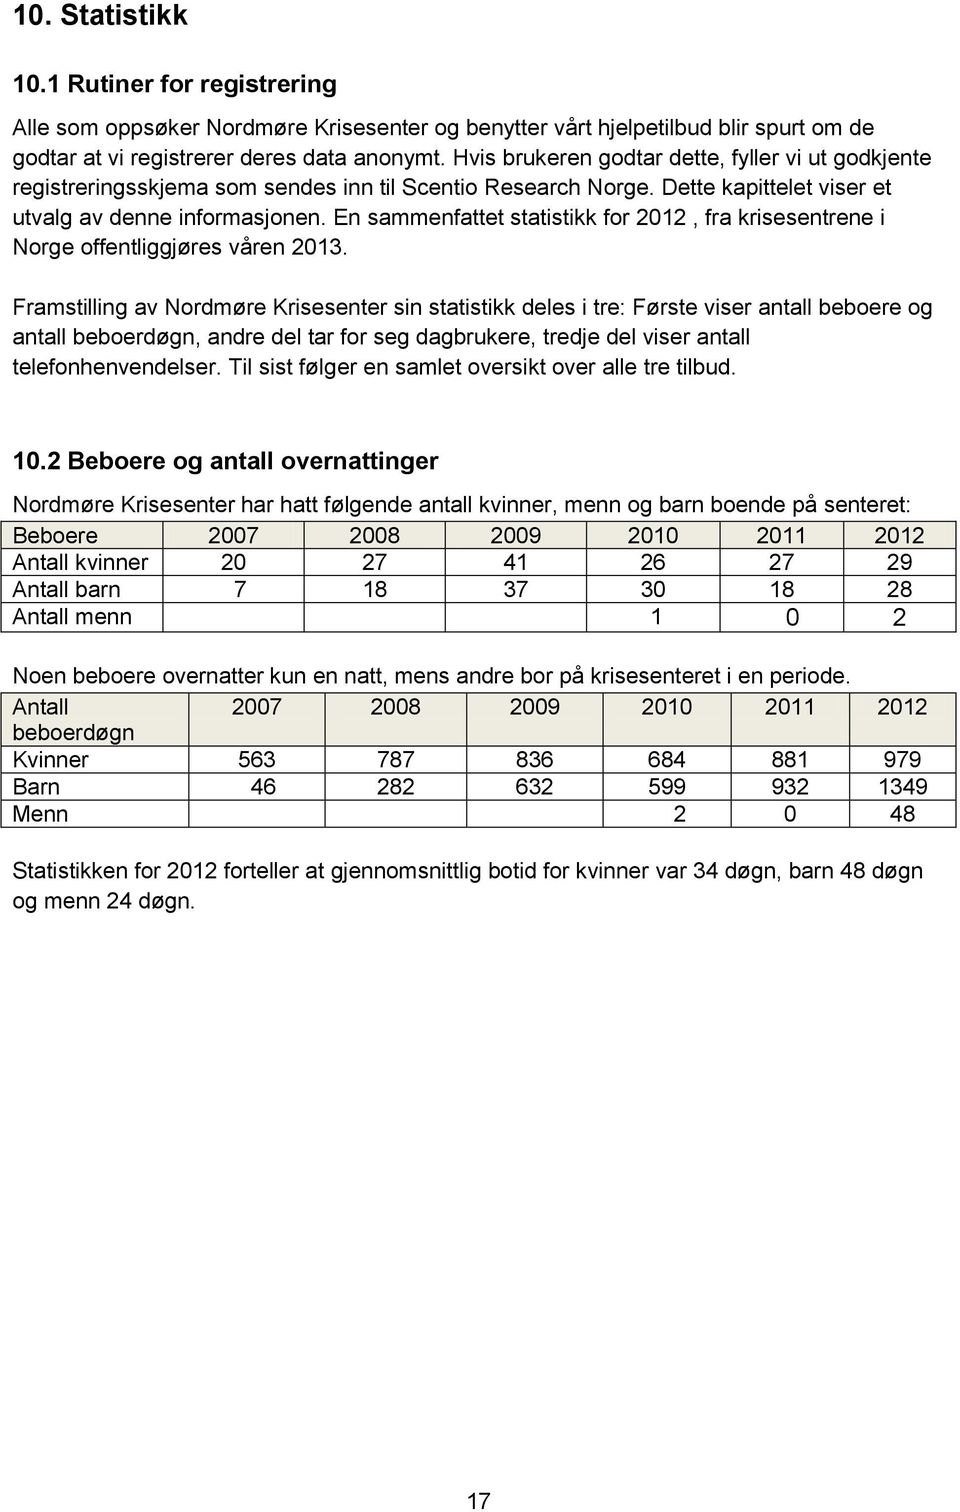 En sammenfattet statistikk for 2012, fra krisesentrene i Norge offentliggjøres våren 2013.